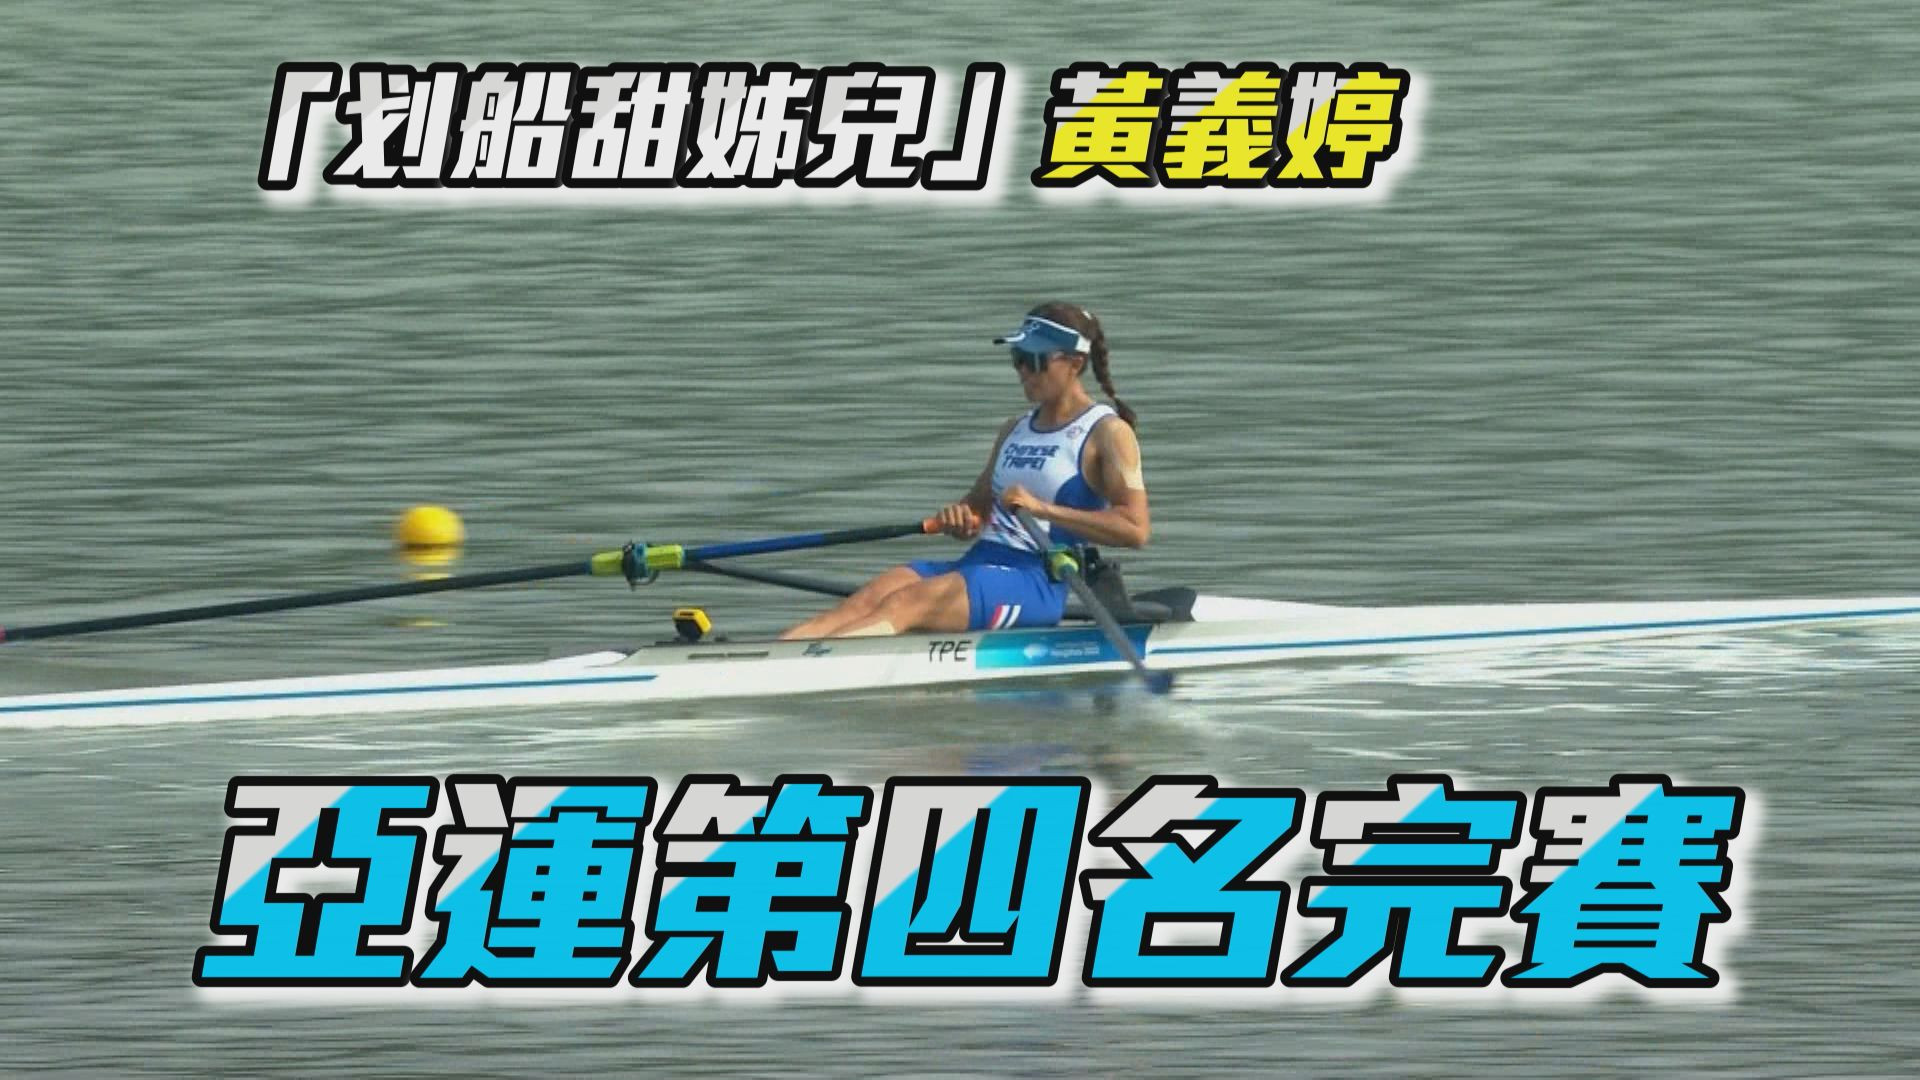 09/25 2022杭州亞運 女子划船單人雙槳決賽